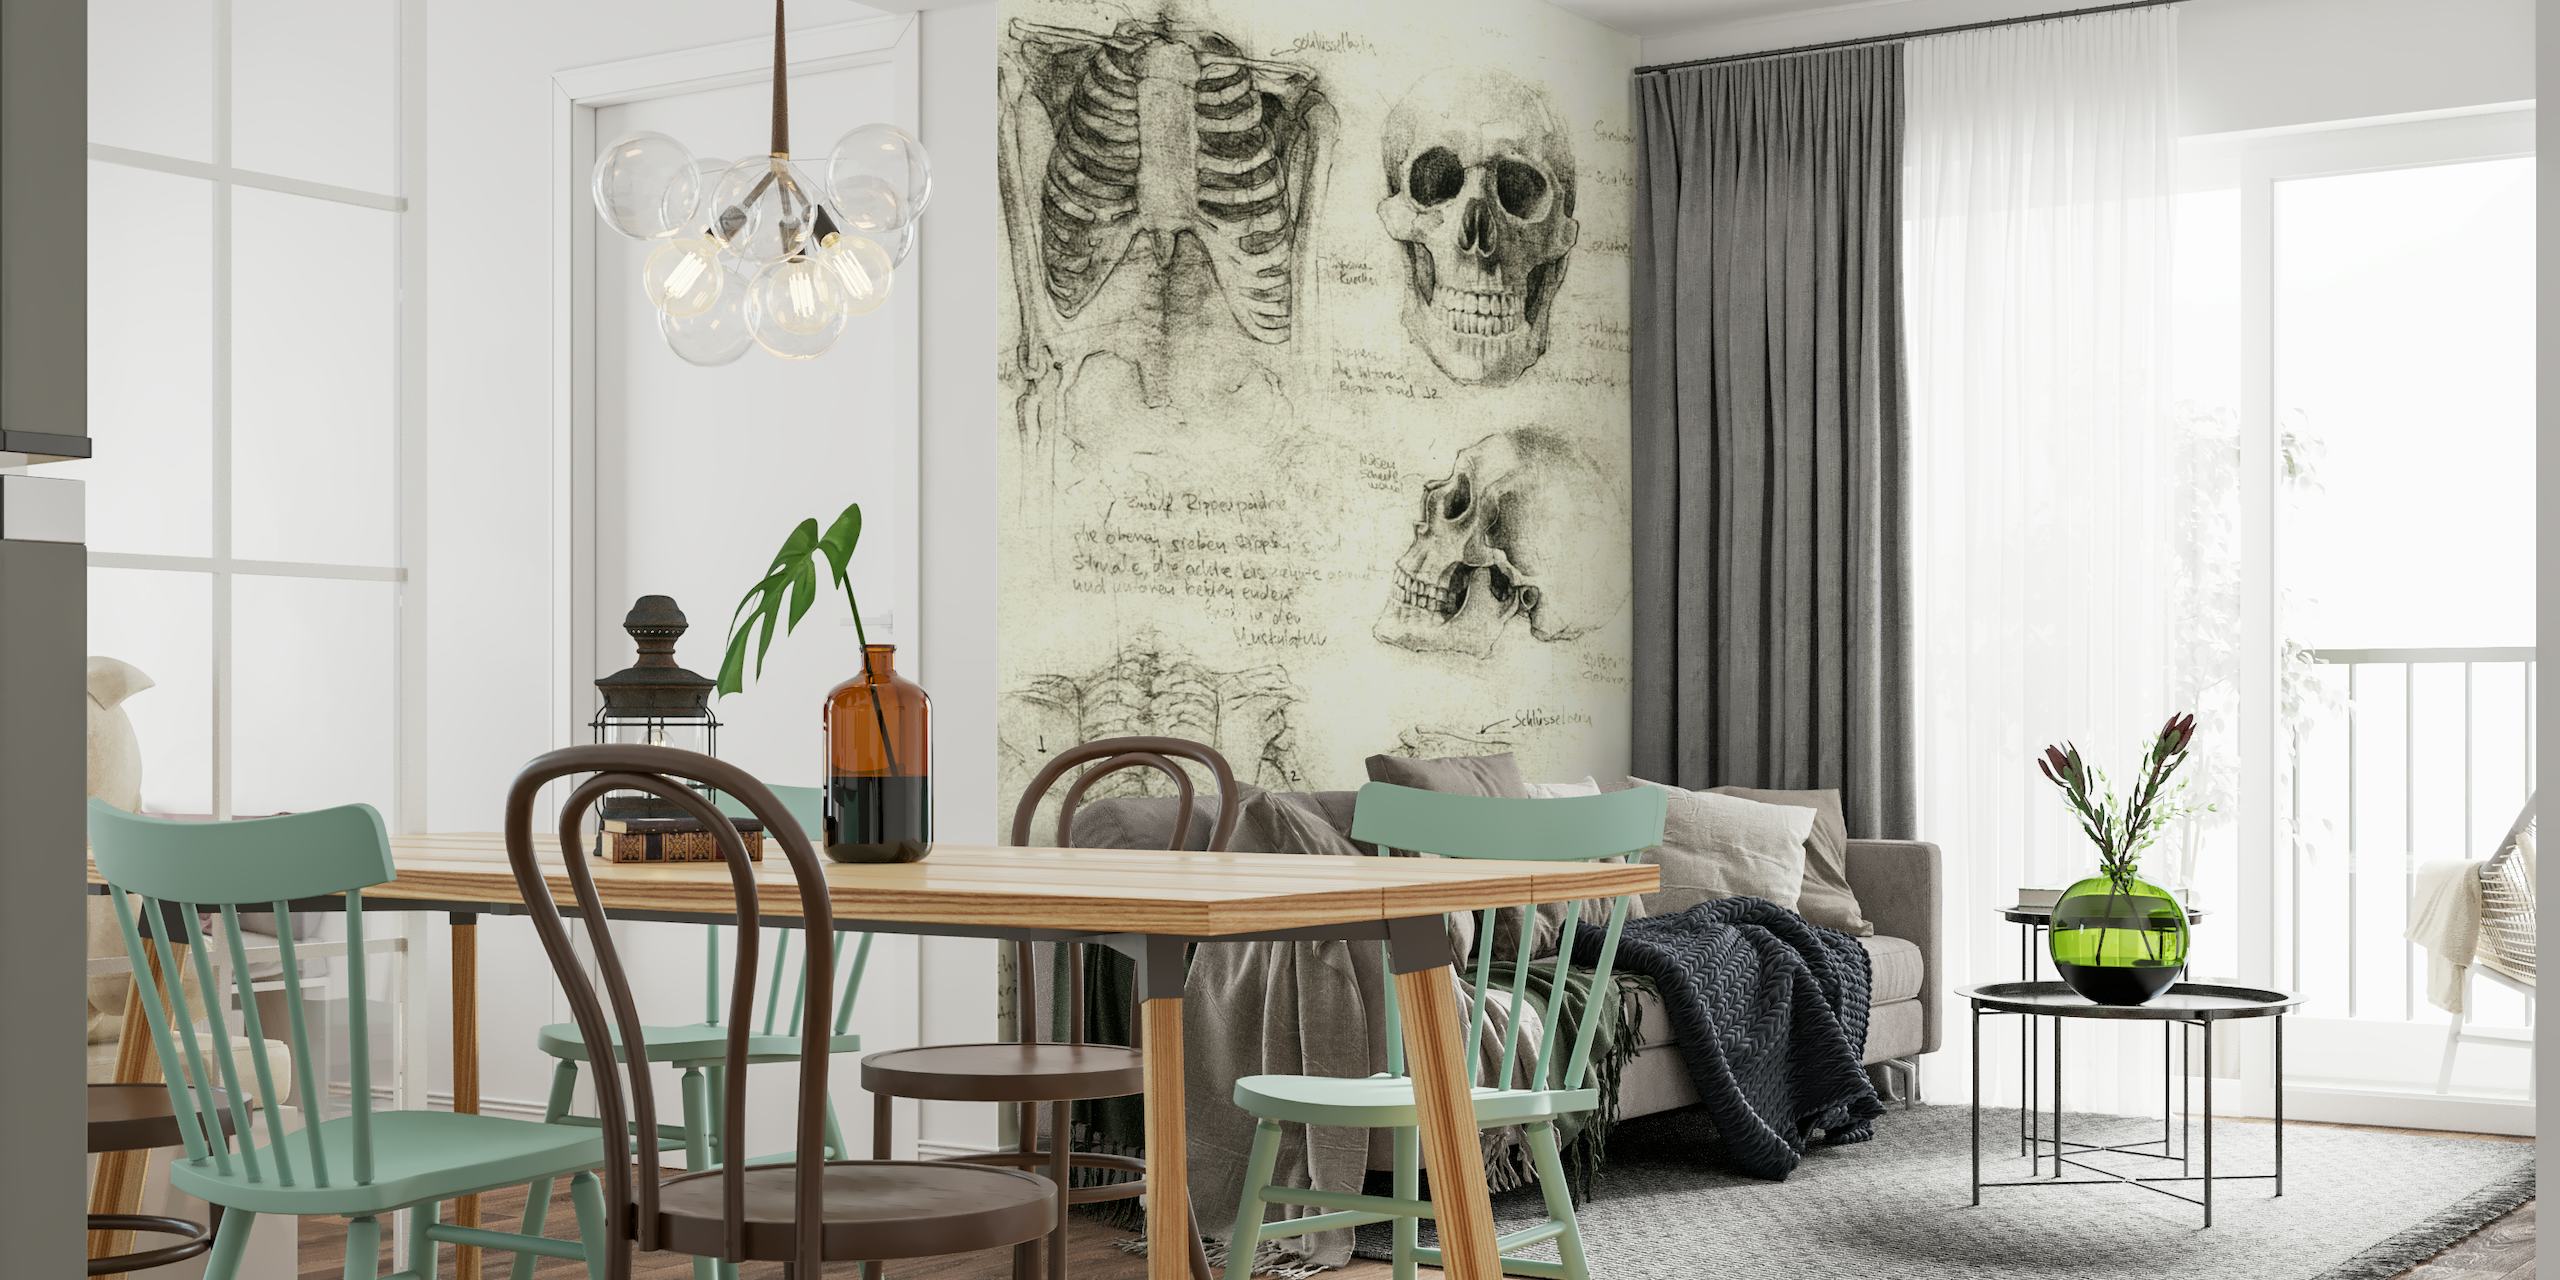 Papier peint mural croquis de squelettes anatomiques présentant des dessins détaillés de crânes et d'os humains